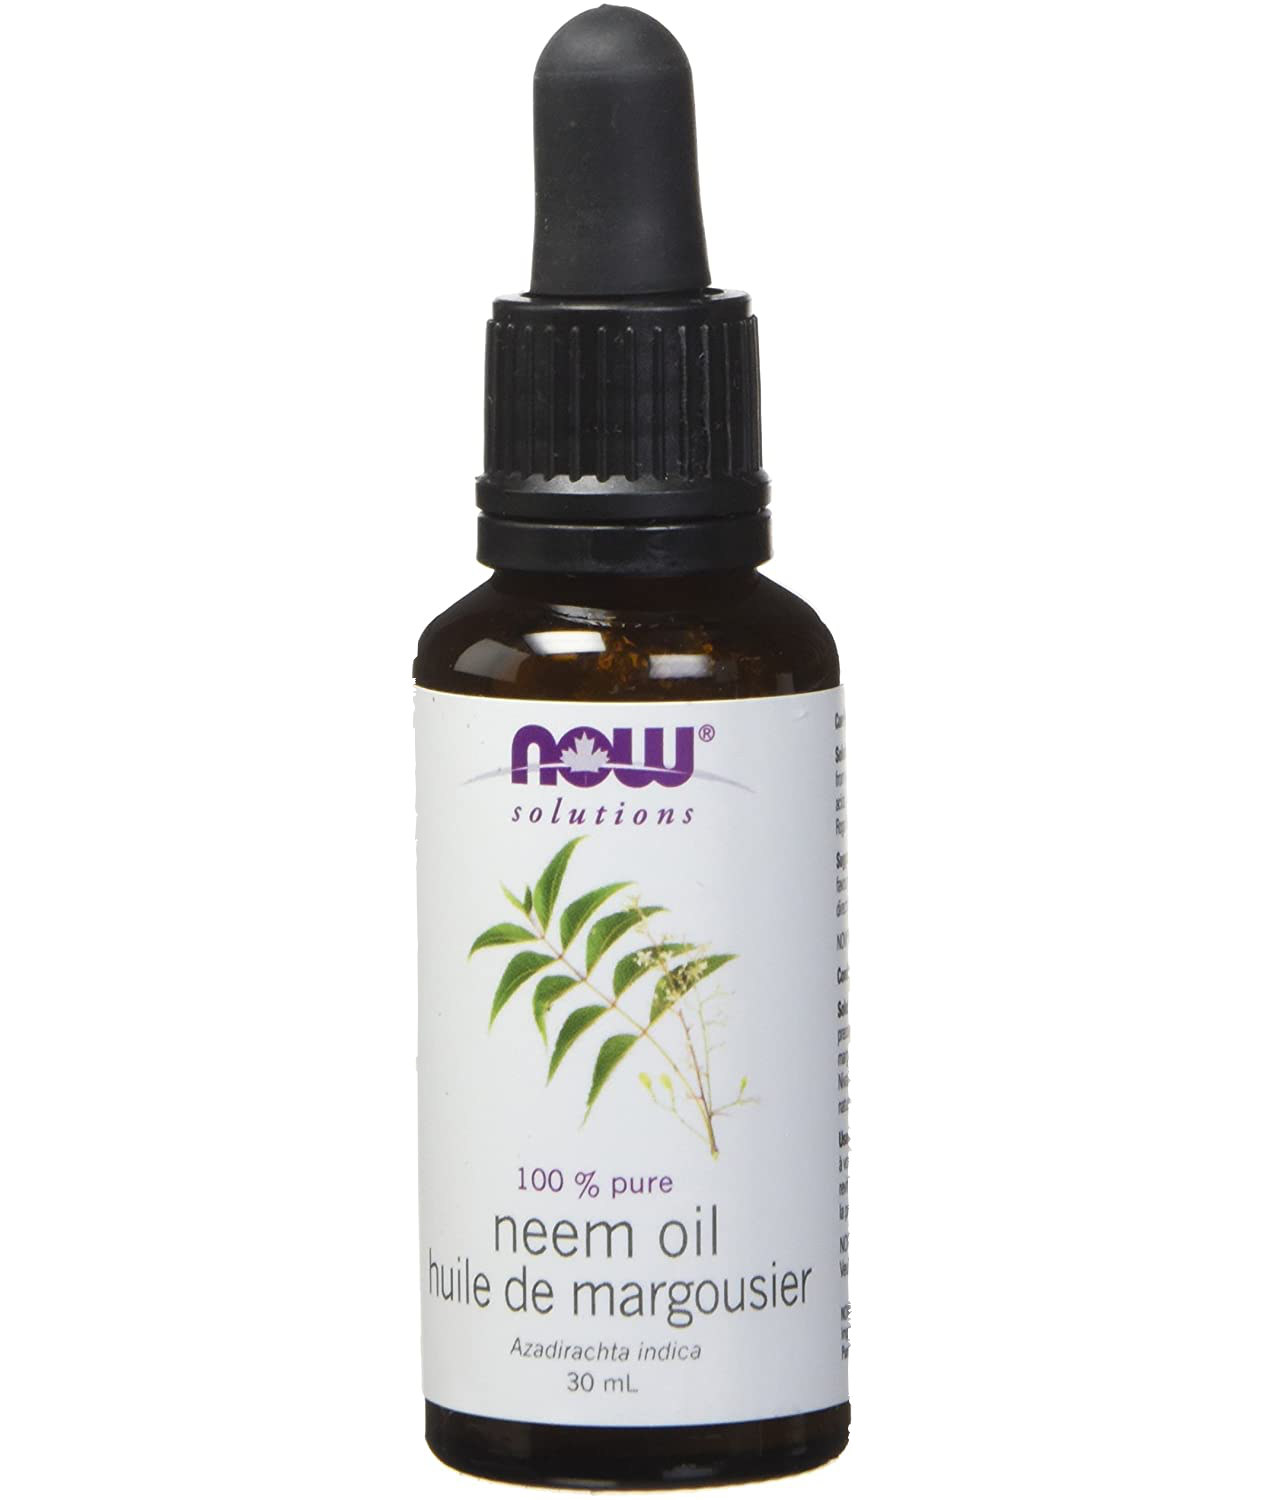 A dropper bottle of 100% pure neem oil 